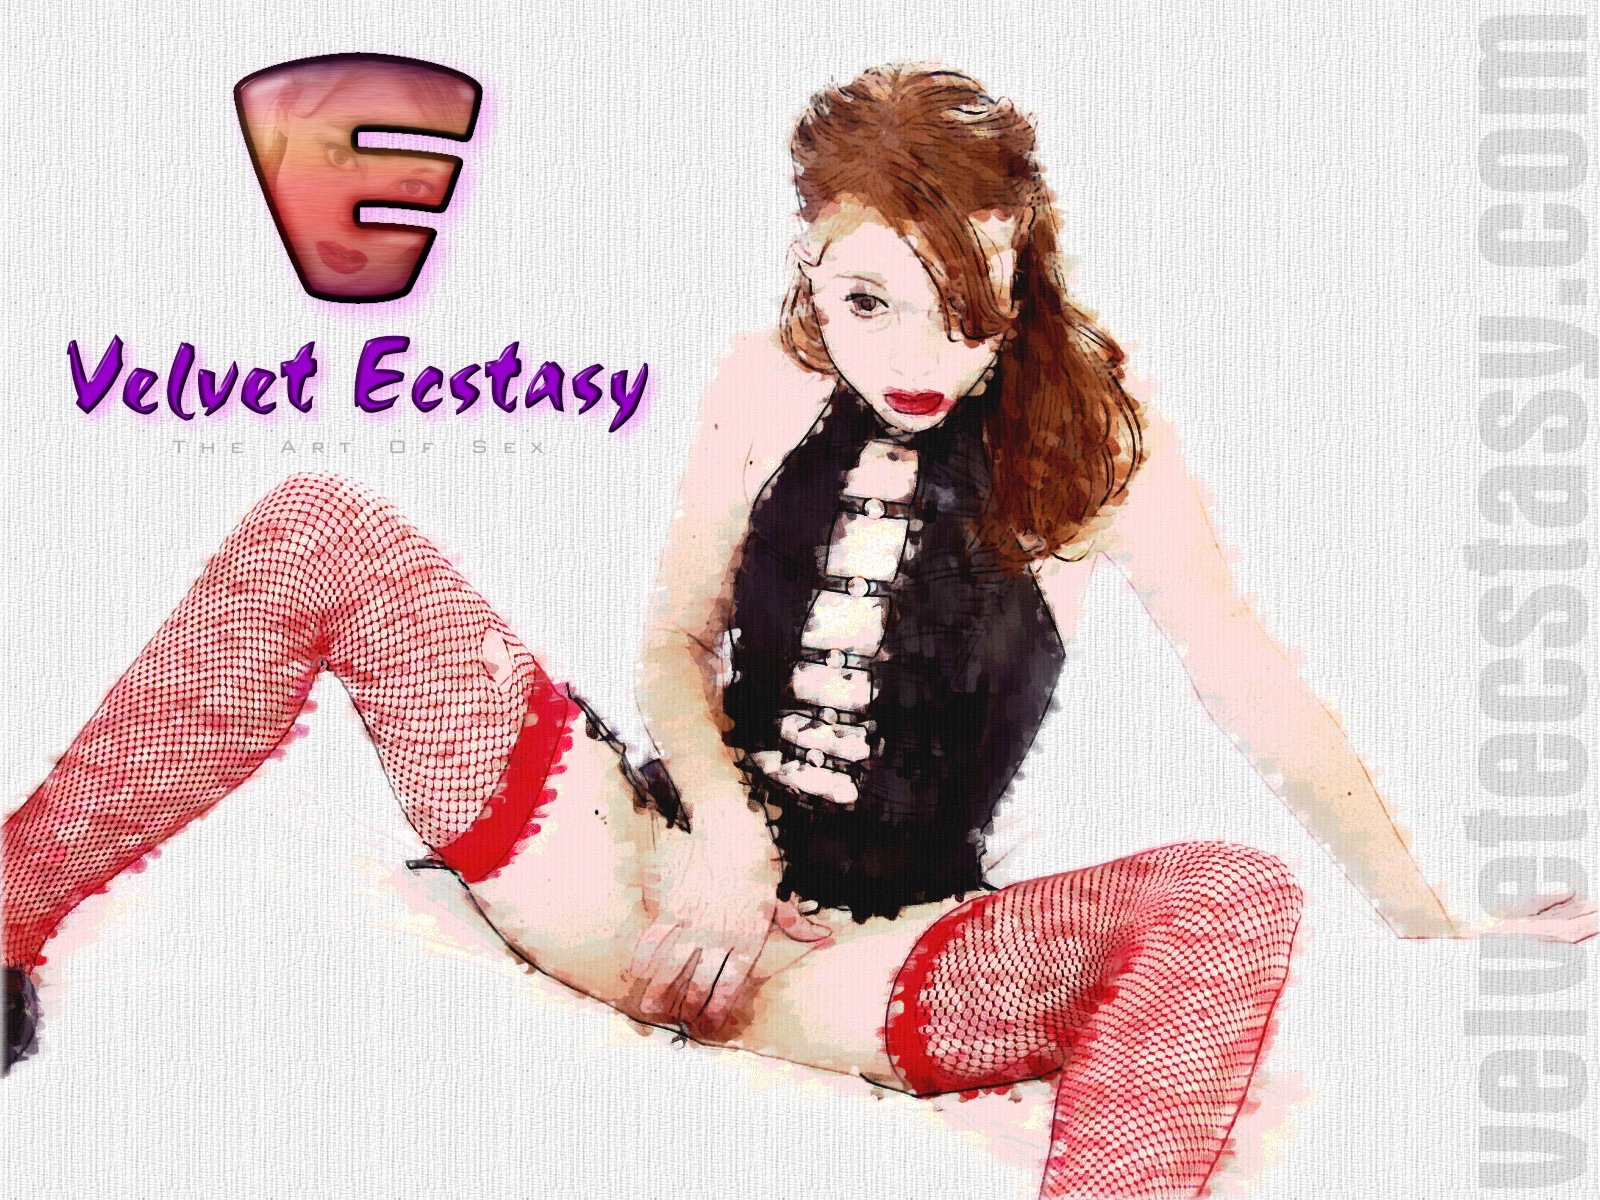 Velvet Ecstasy Wallpaper - 1600x1200